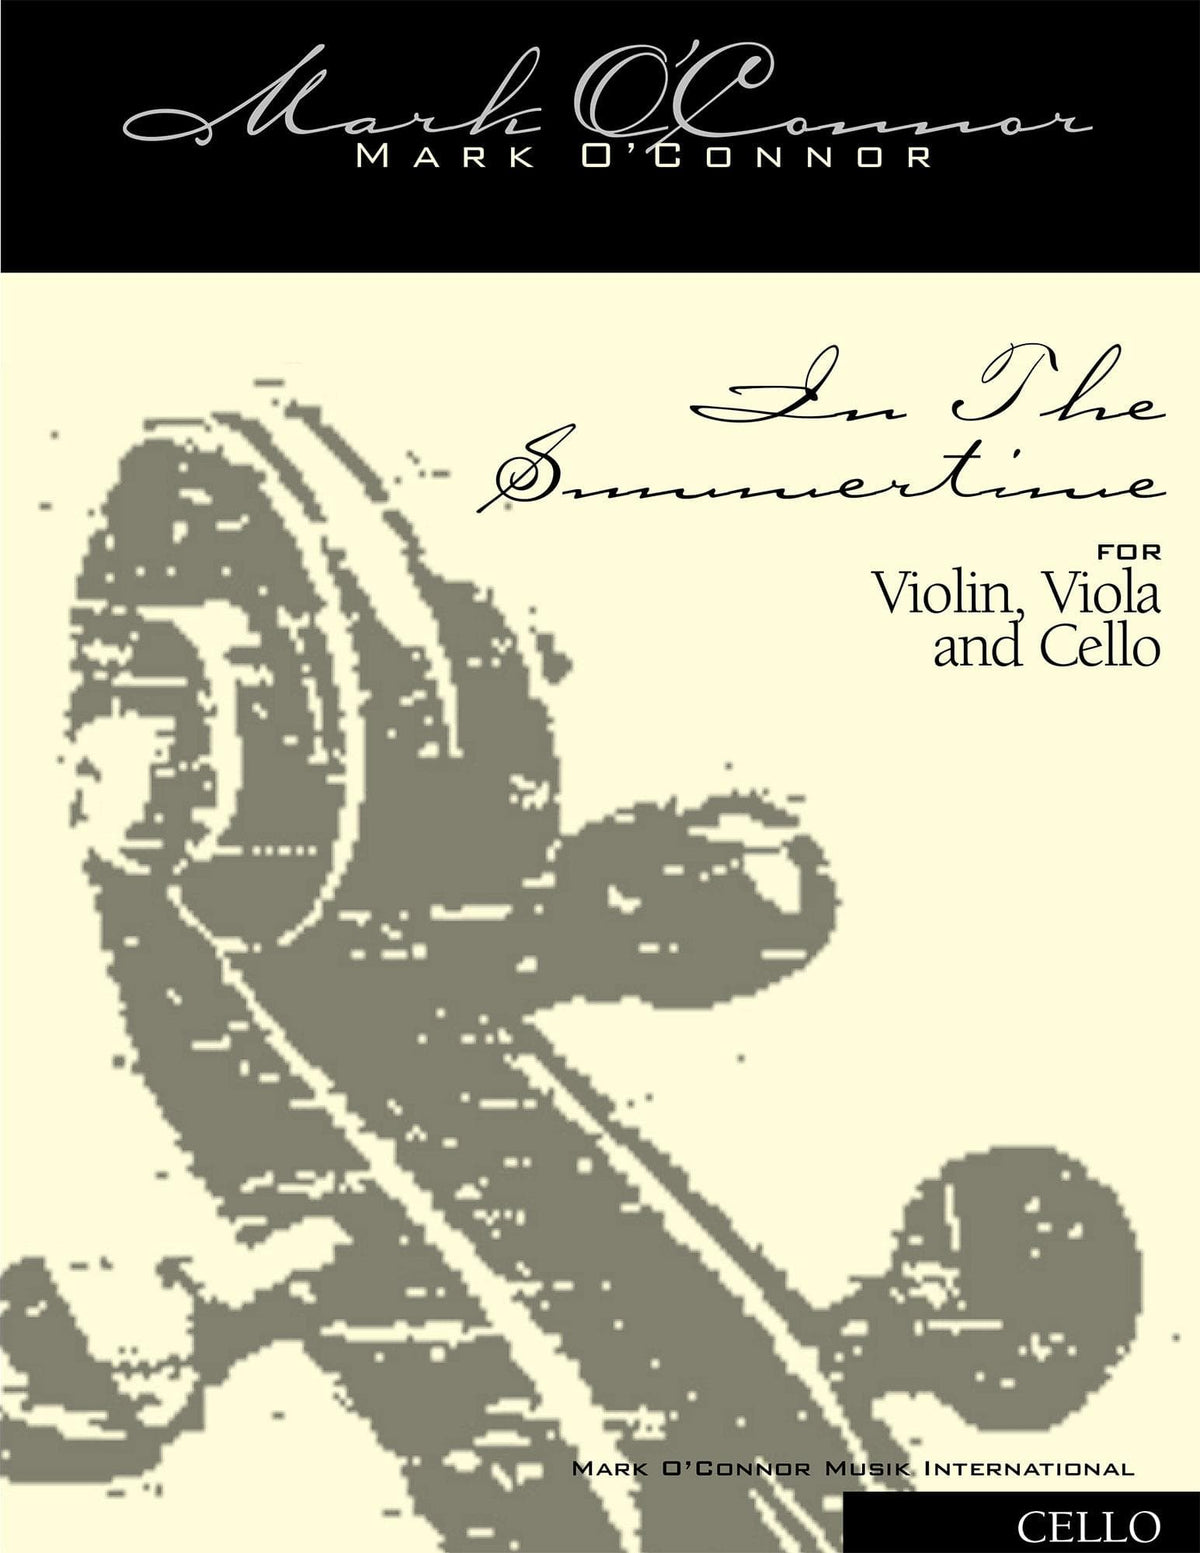 O'Connor, Mark - In the Summertime for Violin, Viola, and Cello - Cello - Digital Download